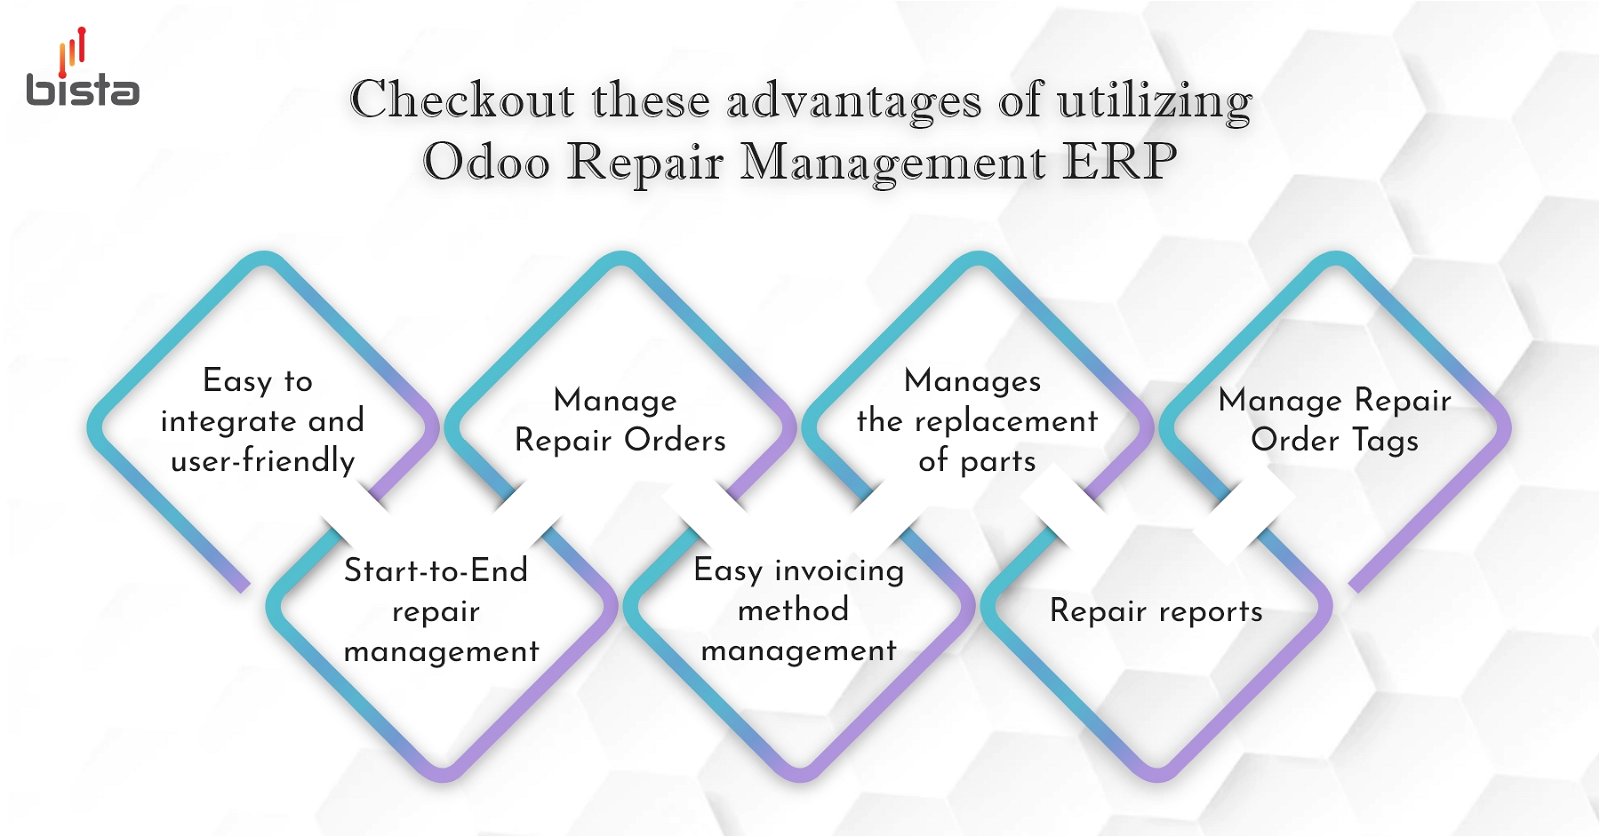 Odoo Repair Management ERP

